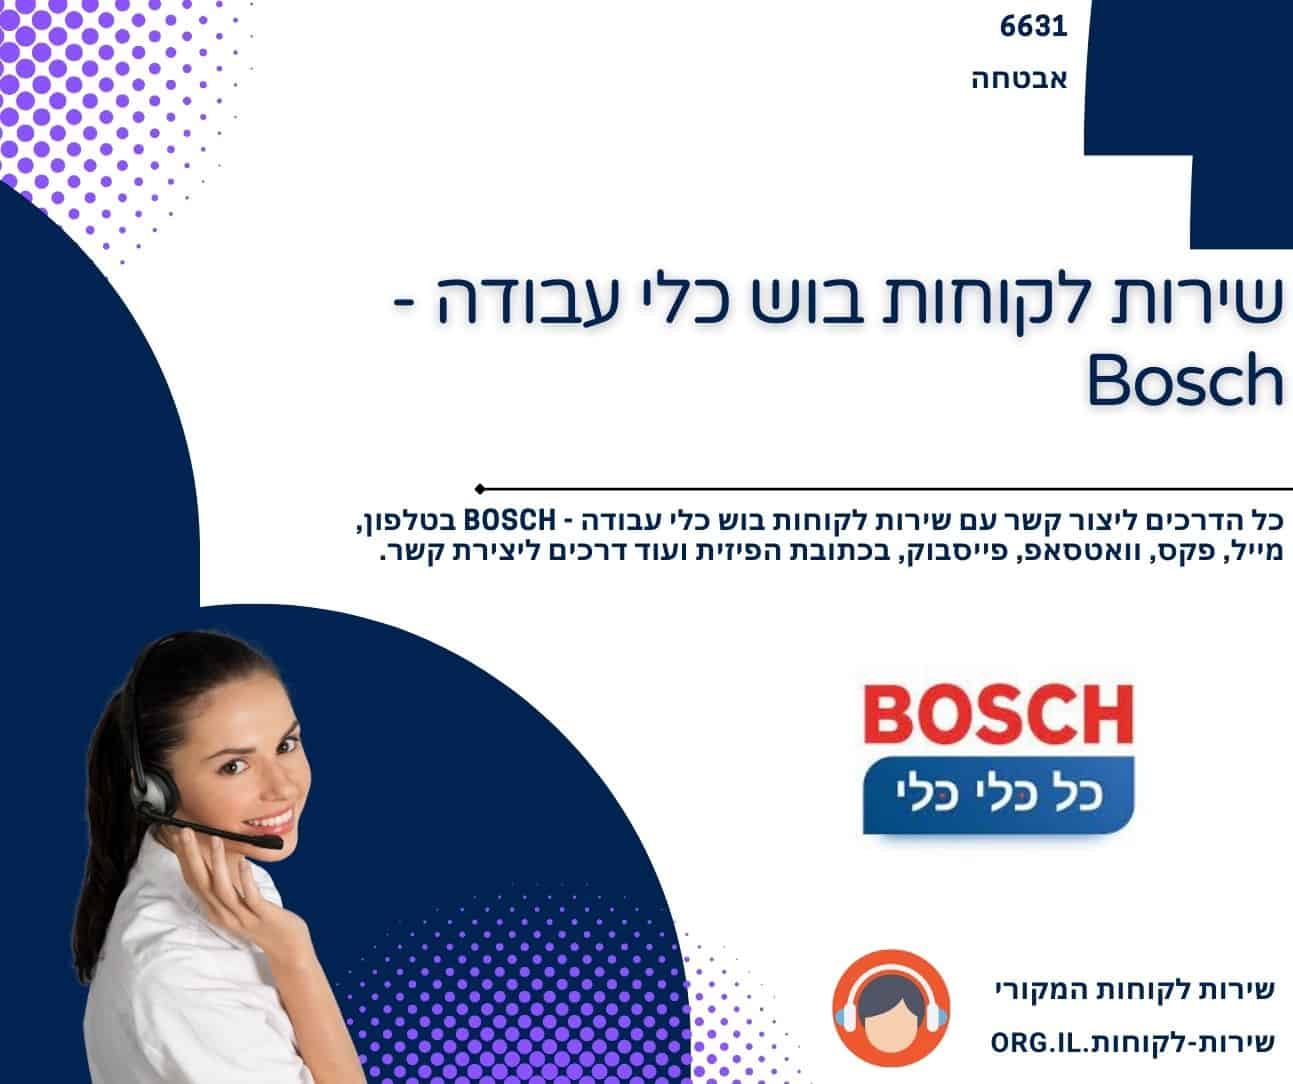 שירות לקוחות בוש כלי עבודה - Bosch